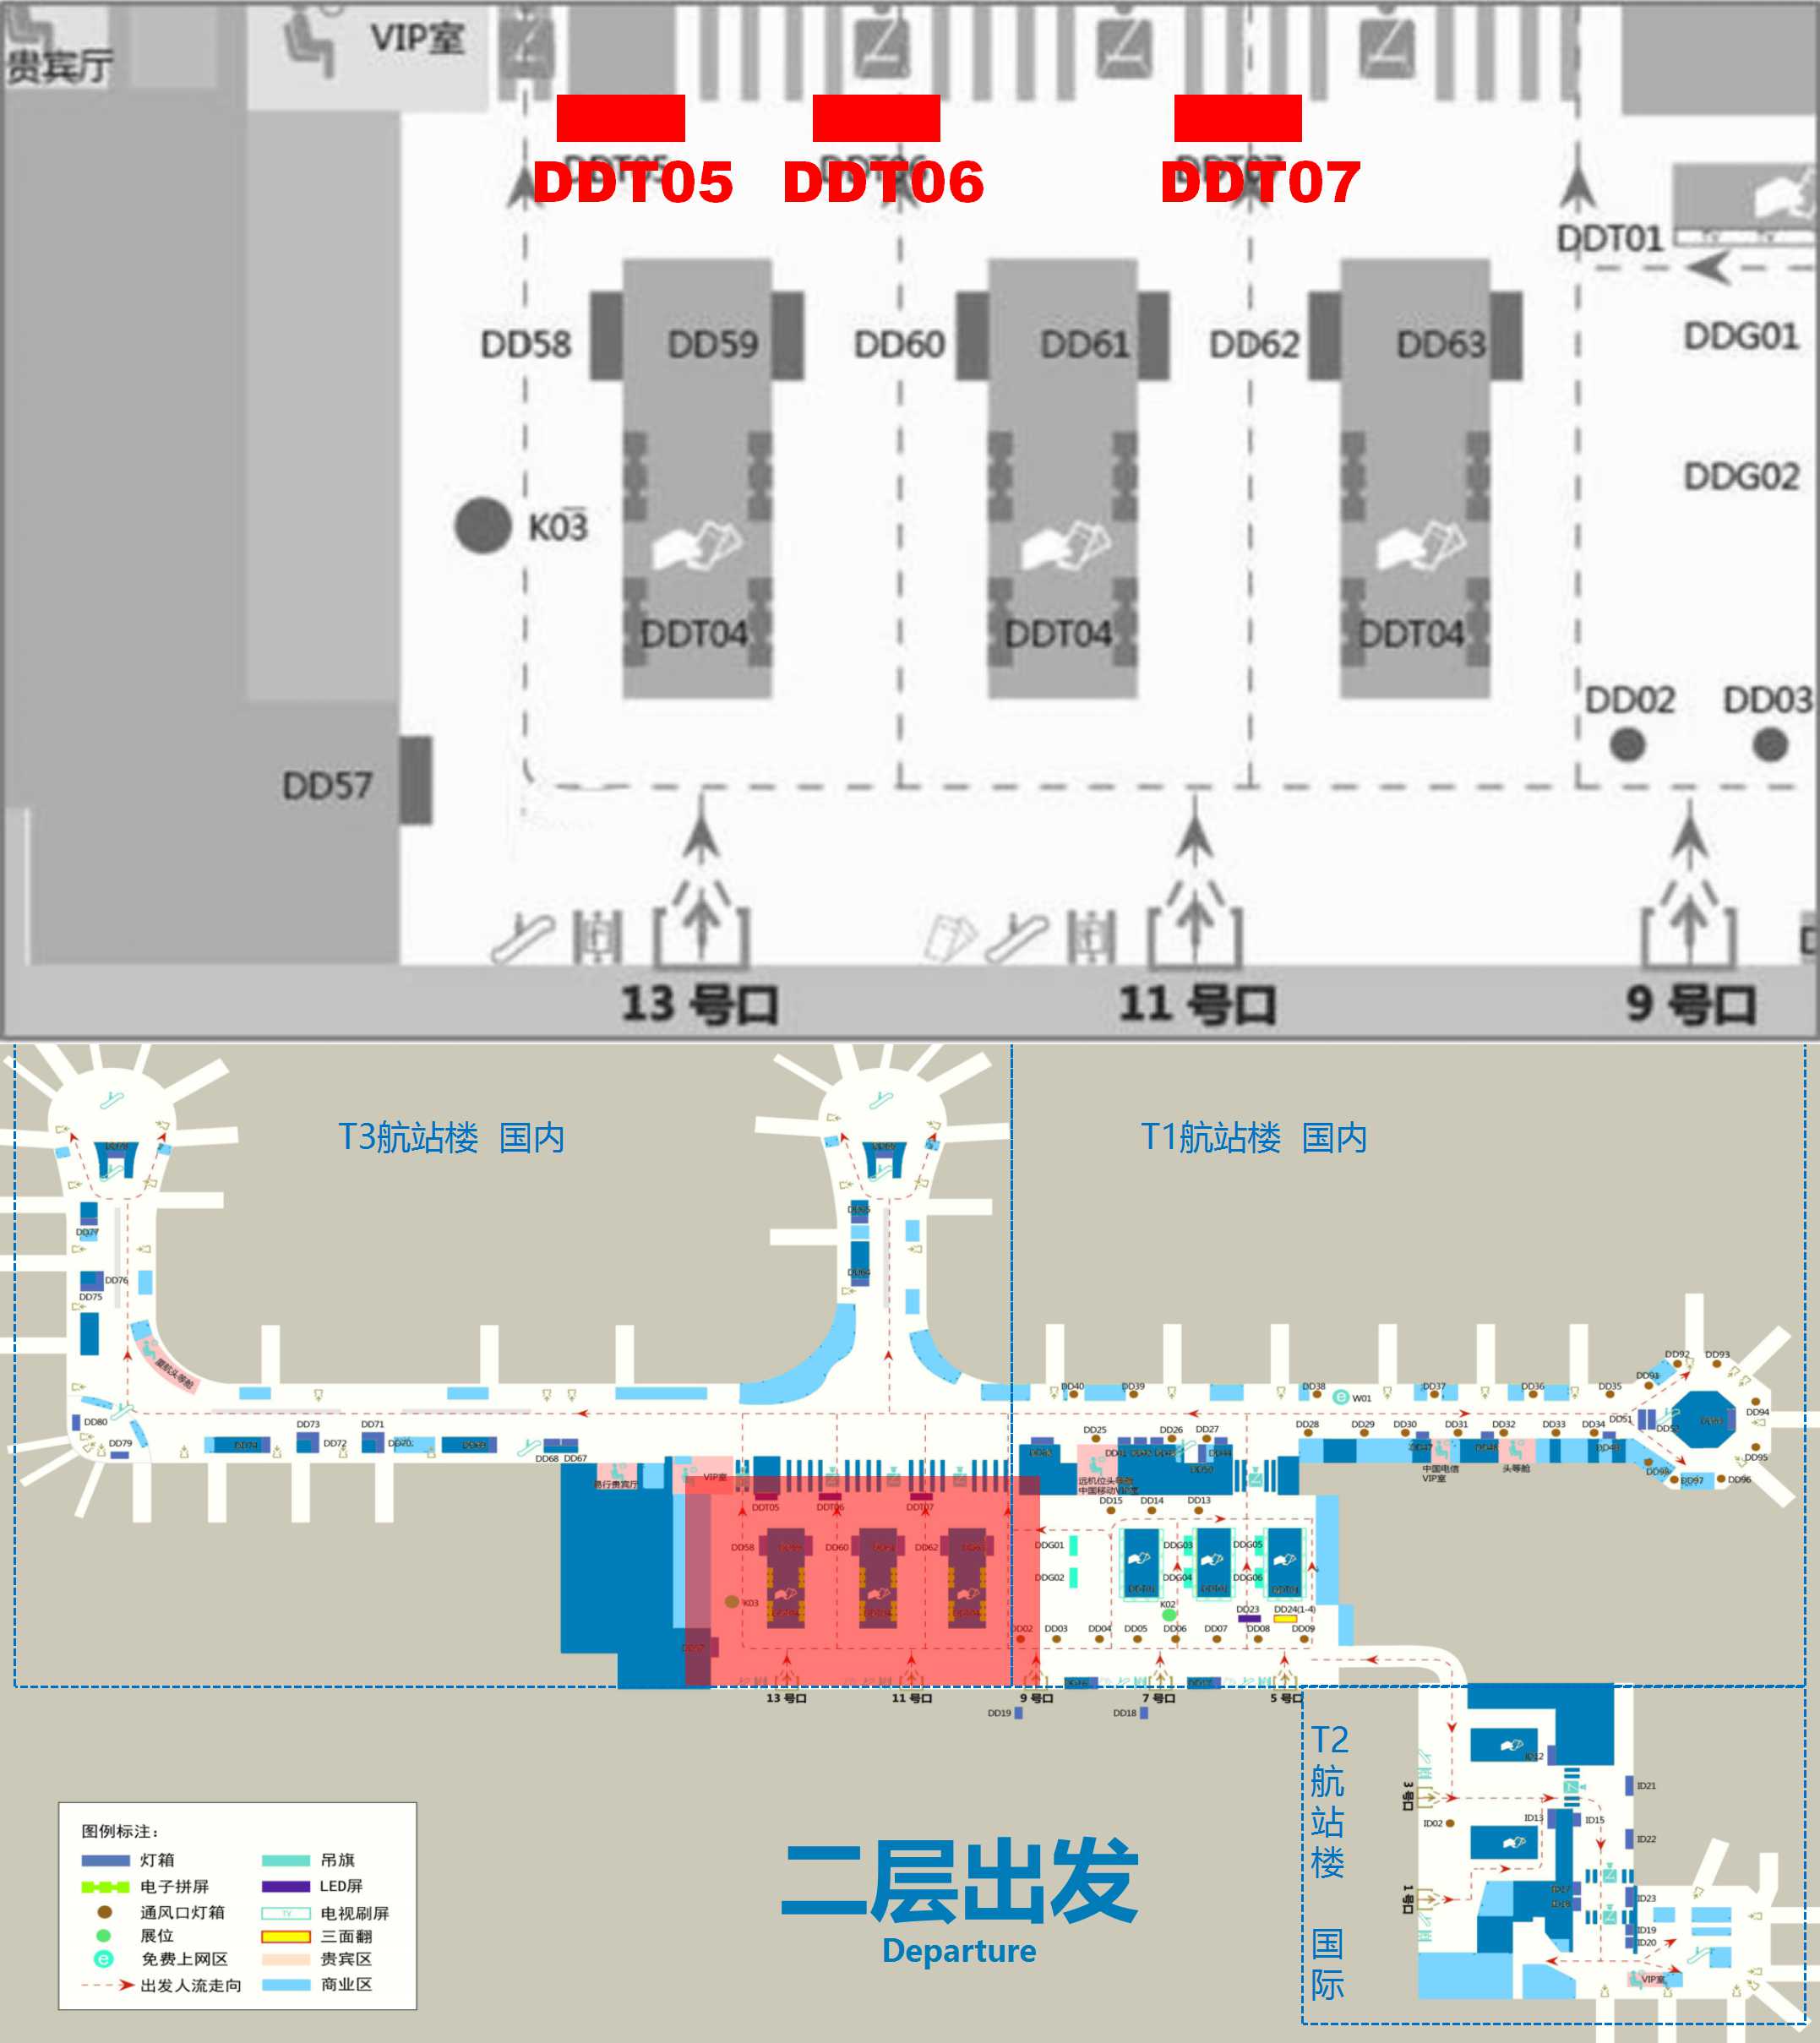 杭州萧山机场广告-T3出发安检上方LED屏位置图